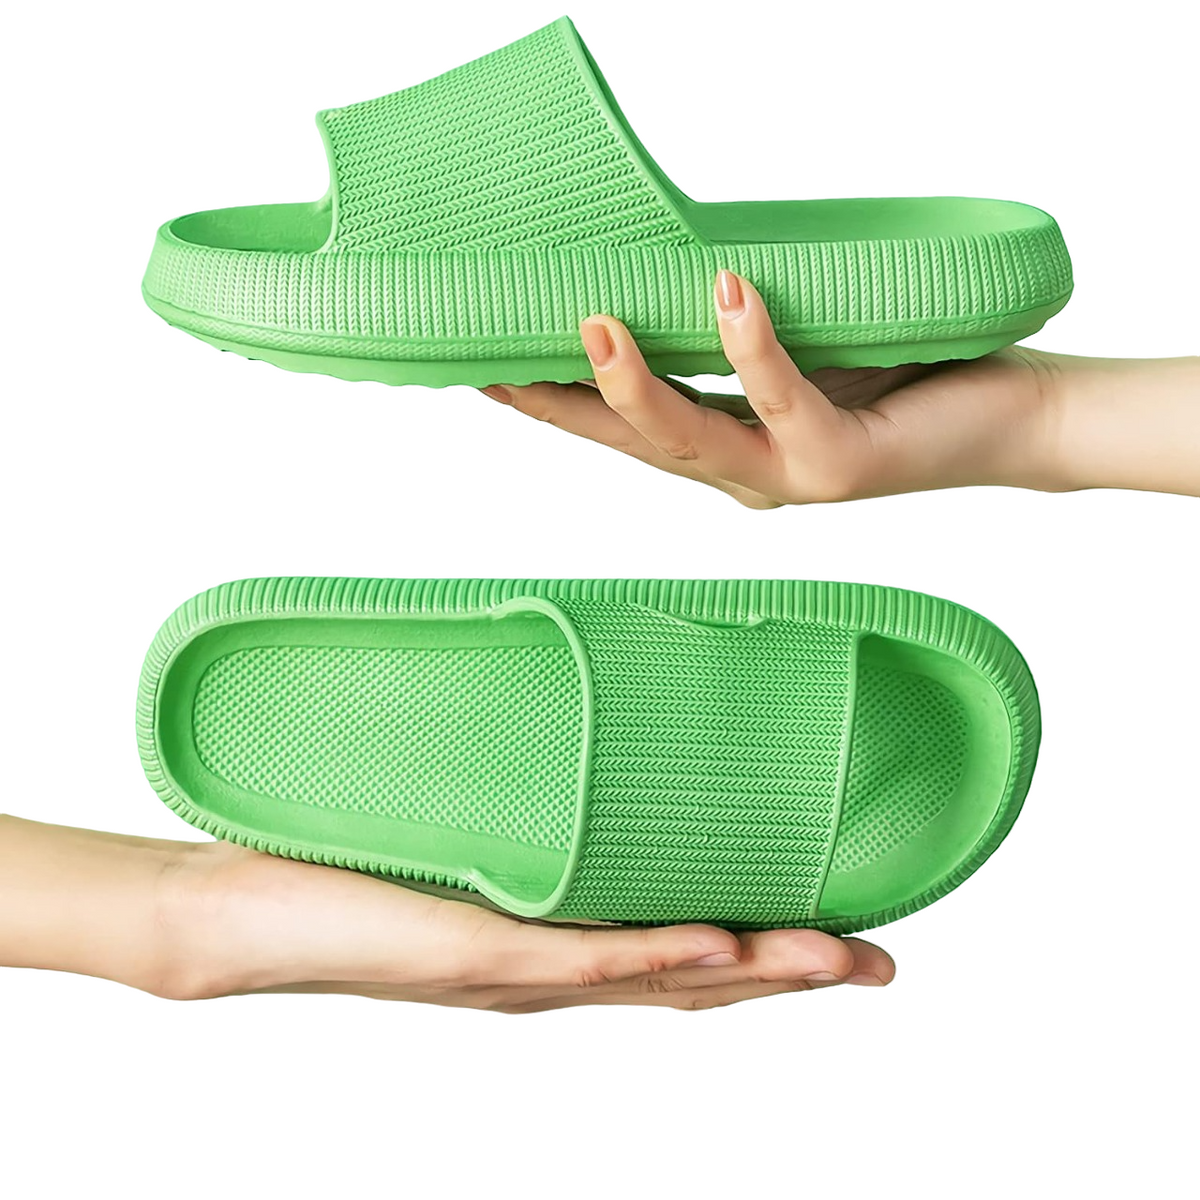 Unisex Supreme Comfort Indoor Slippers